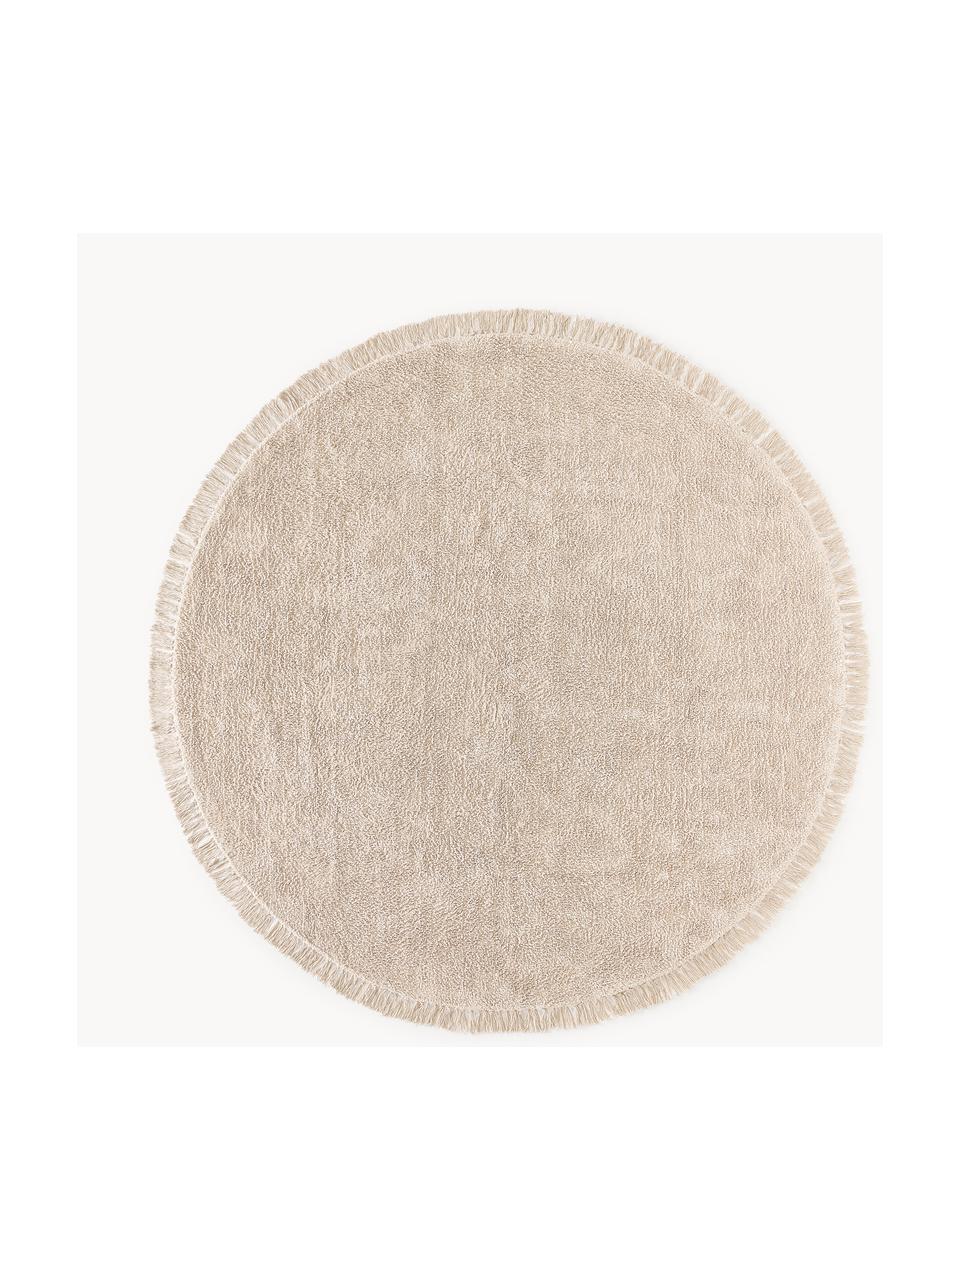 Alfombra redonda artesanal de algodón Daya, Beige claro, Ø 110 cm (Tamaño S)